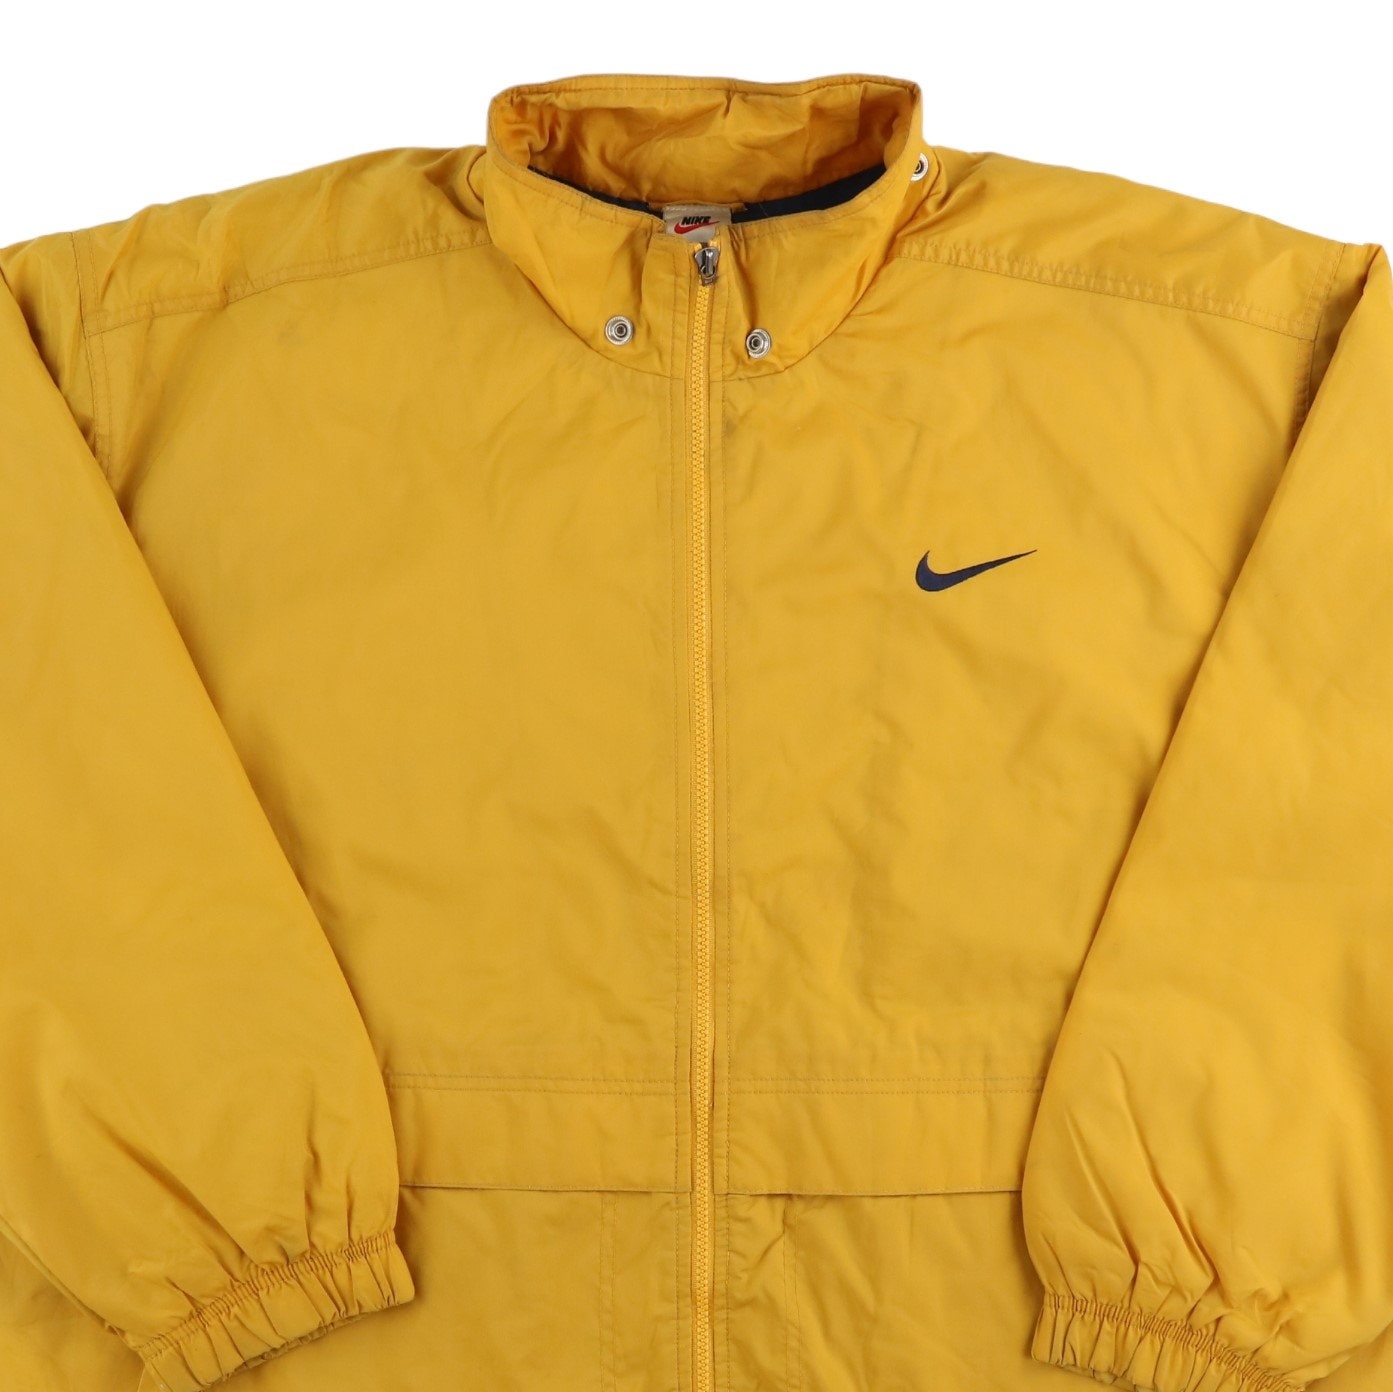 Nike Jacket Nike Vintage Track Jacket Yellow Size - Etsy